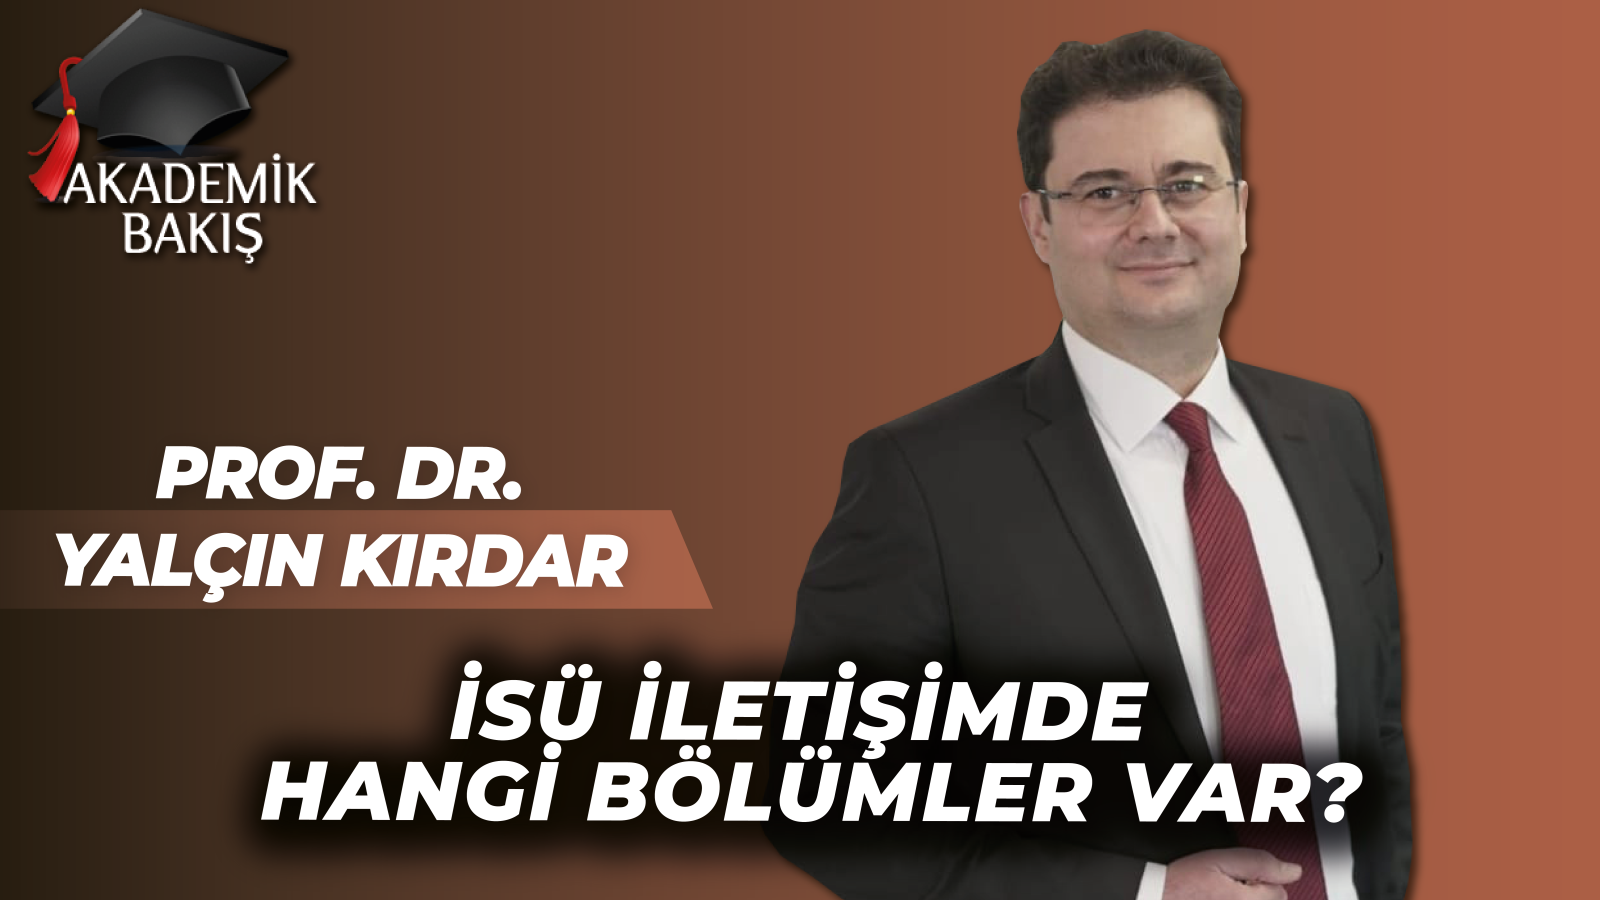 Prof. Dr. Yalçın Kırdar Akademik Bakış’a İSÜ İletişimin Uygulamalarını Anlattı